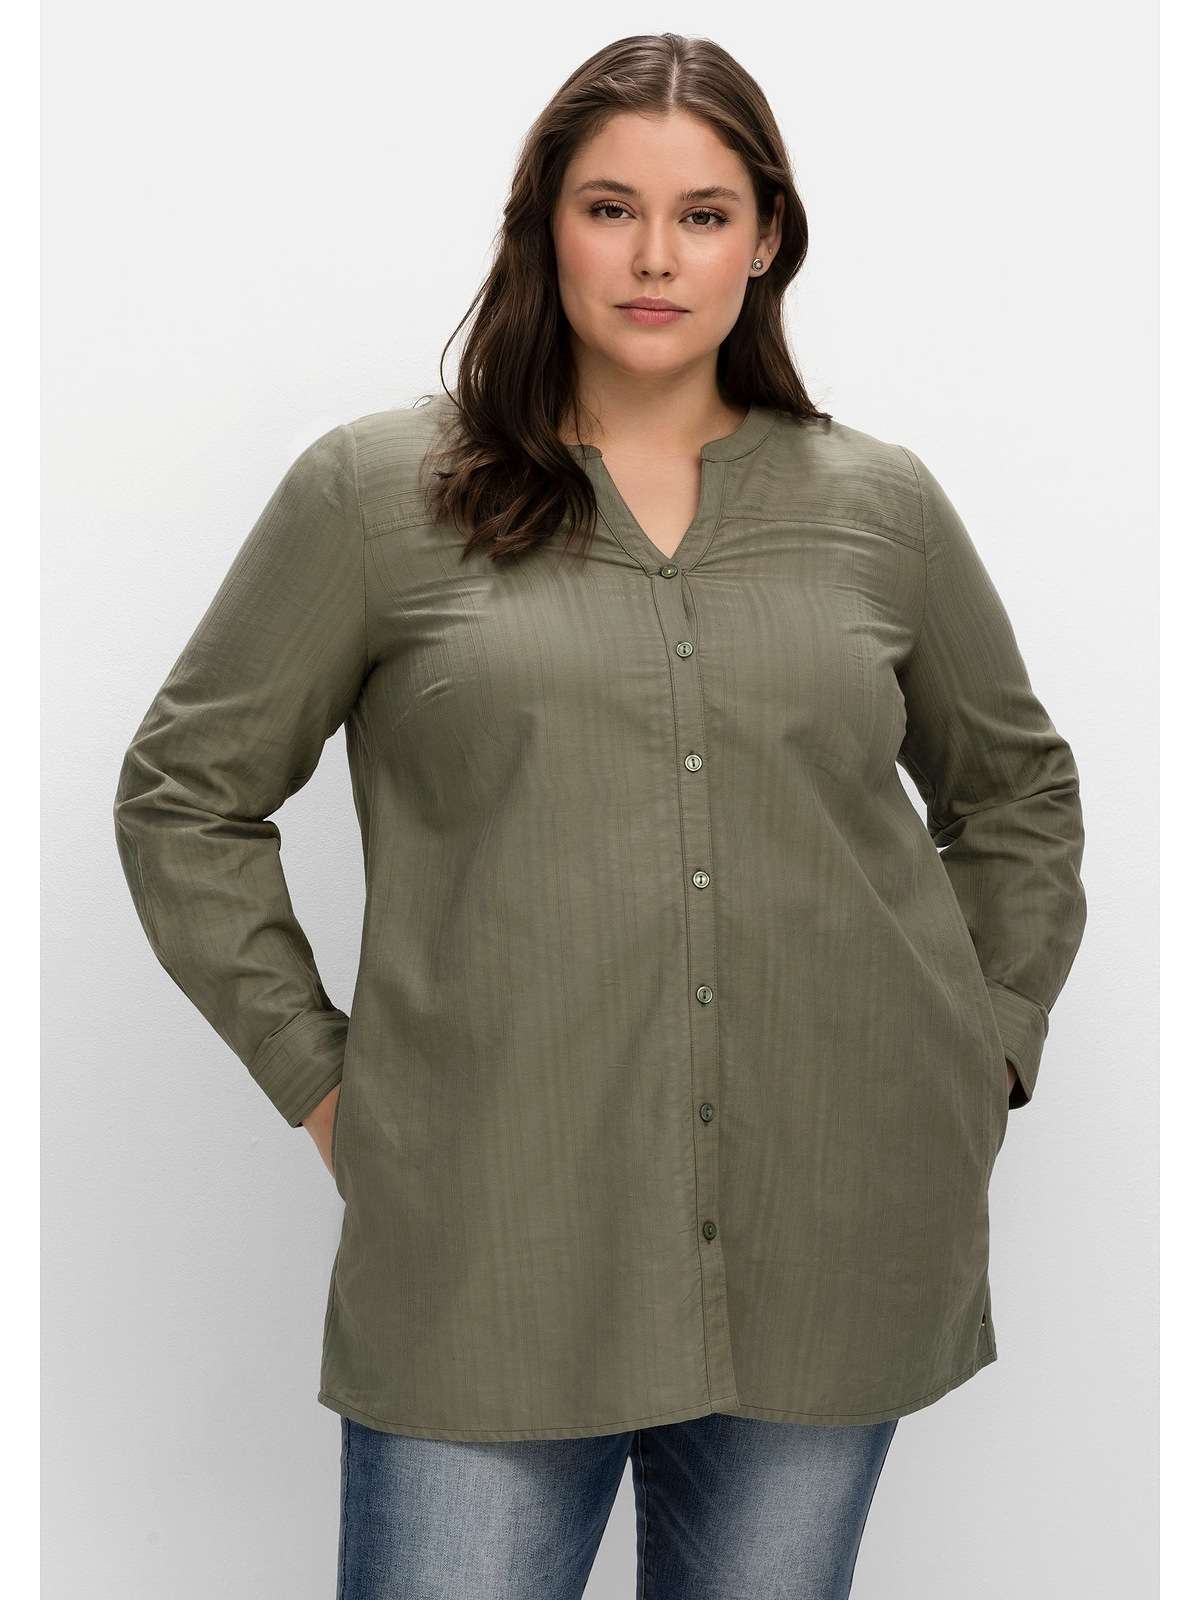 Блузка-рубашка, в полосатую структуру